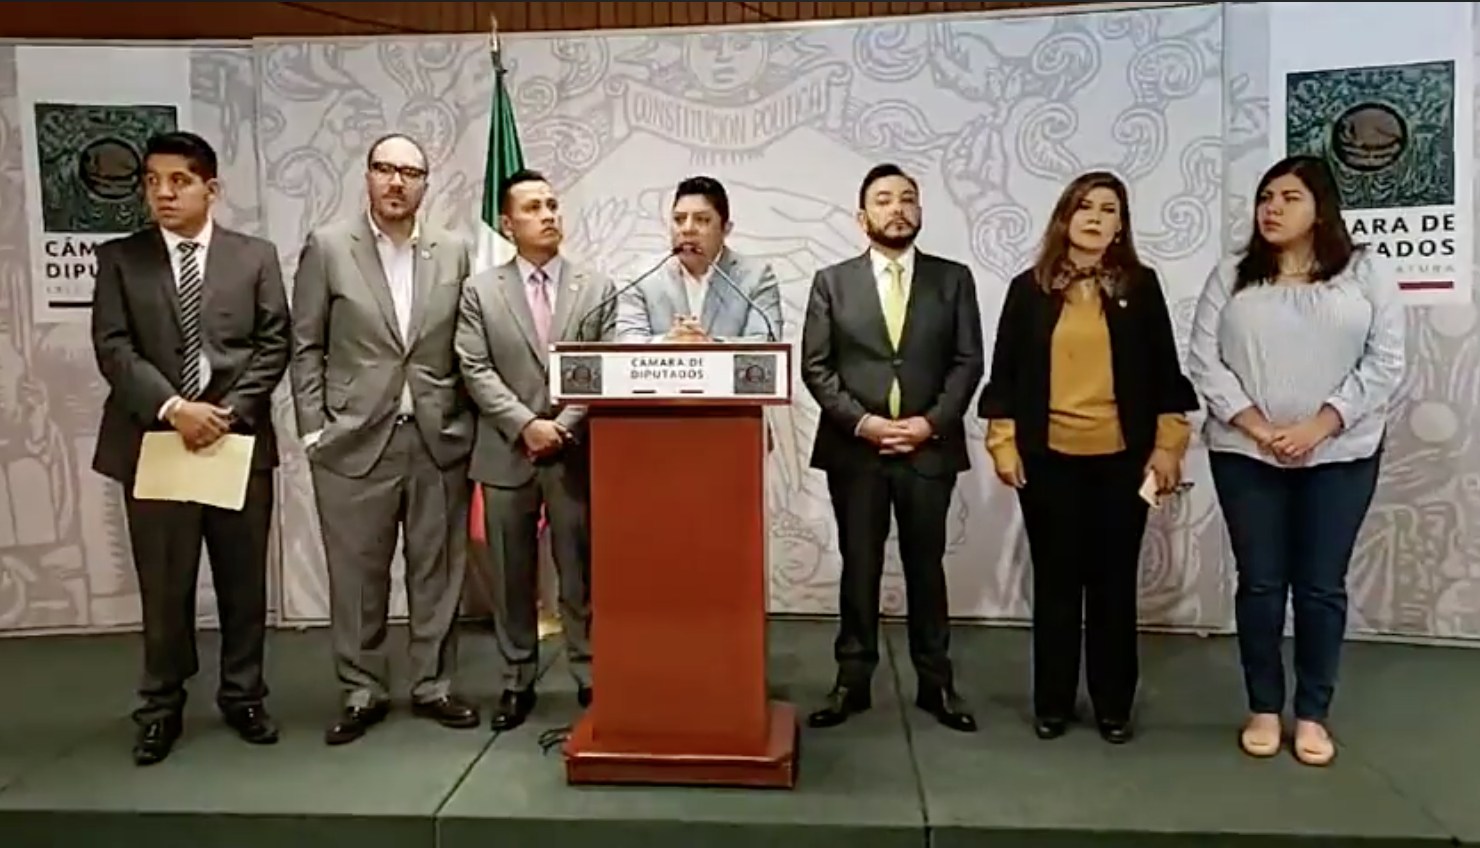  Gallardo Cardona coordinará a perredistas “independientes”; acompañarán a Morena en la Cámara de Diputados